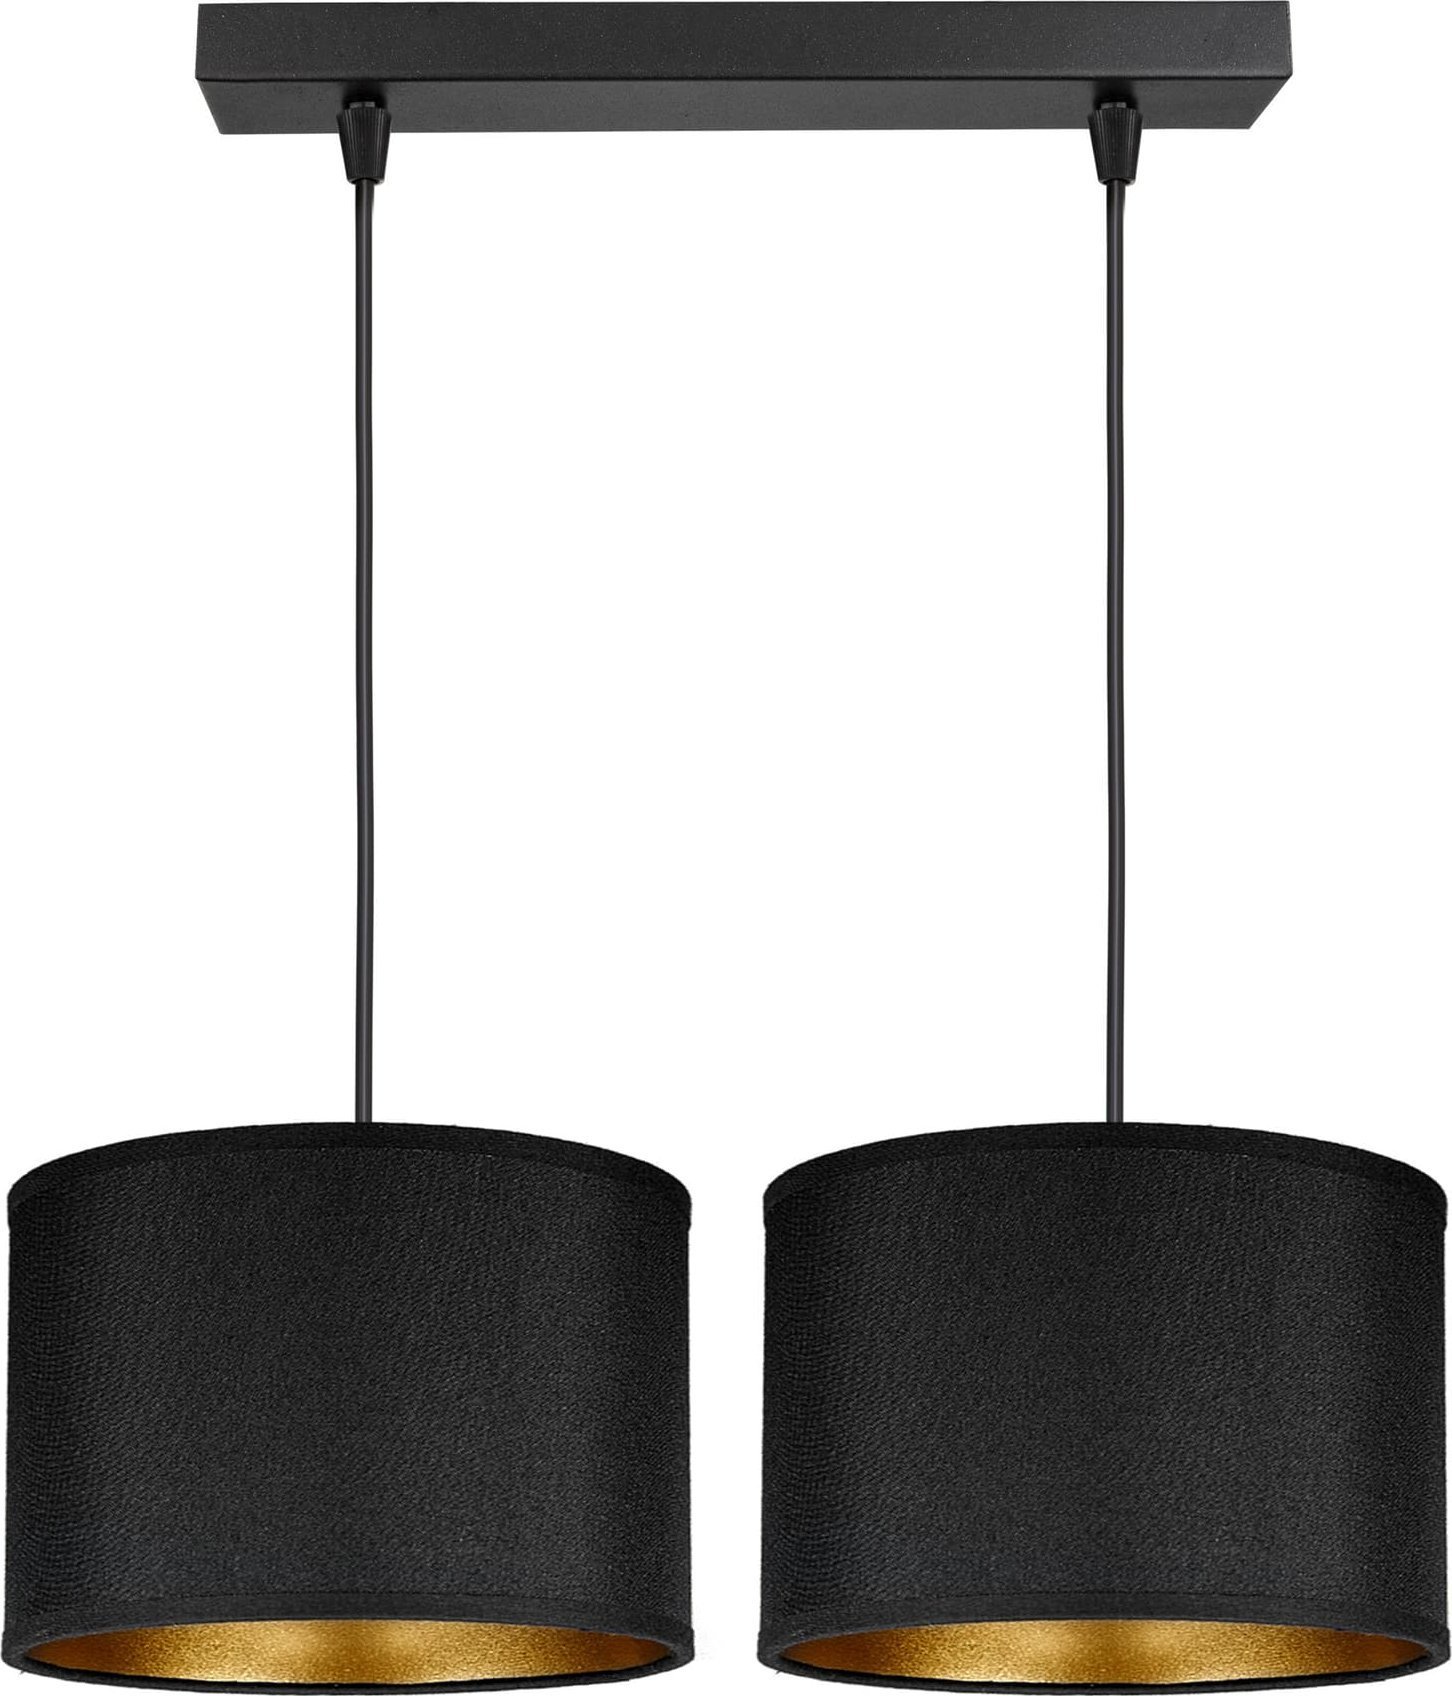 Lampă suspendată Orno KYLO 2P E27, lampă suspendată, max. 2x60W, negru, bandă